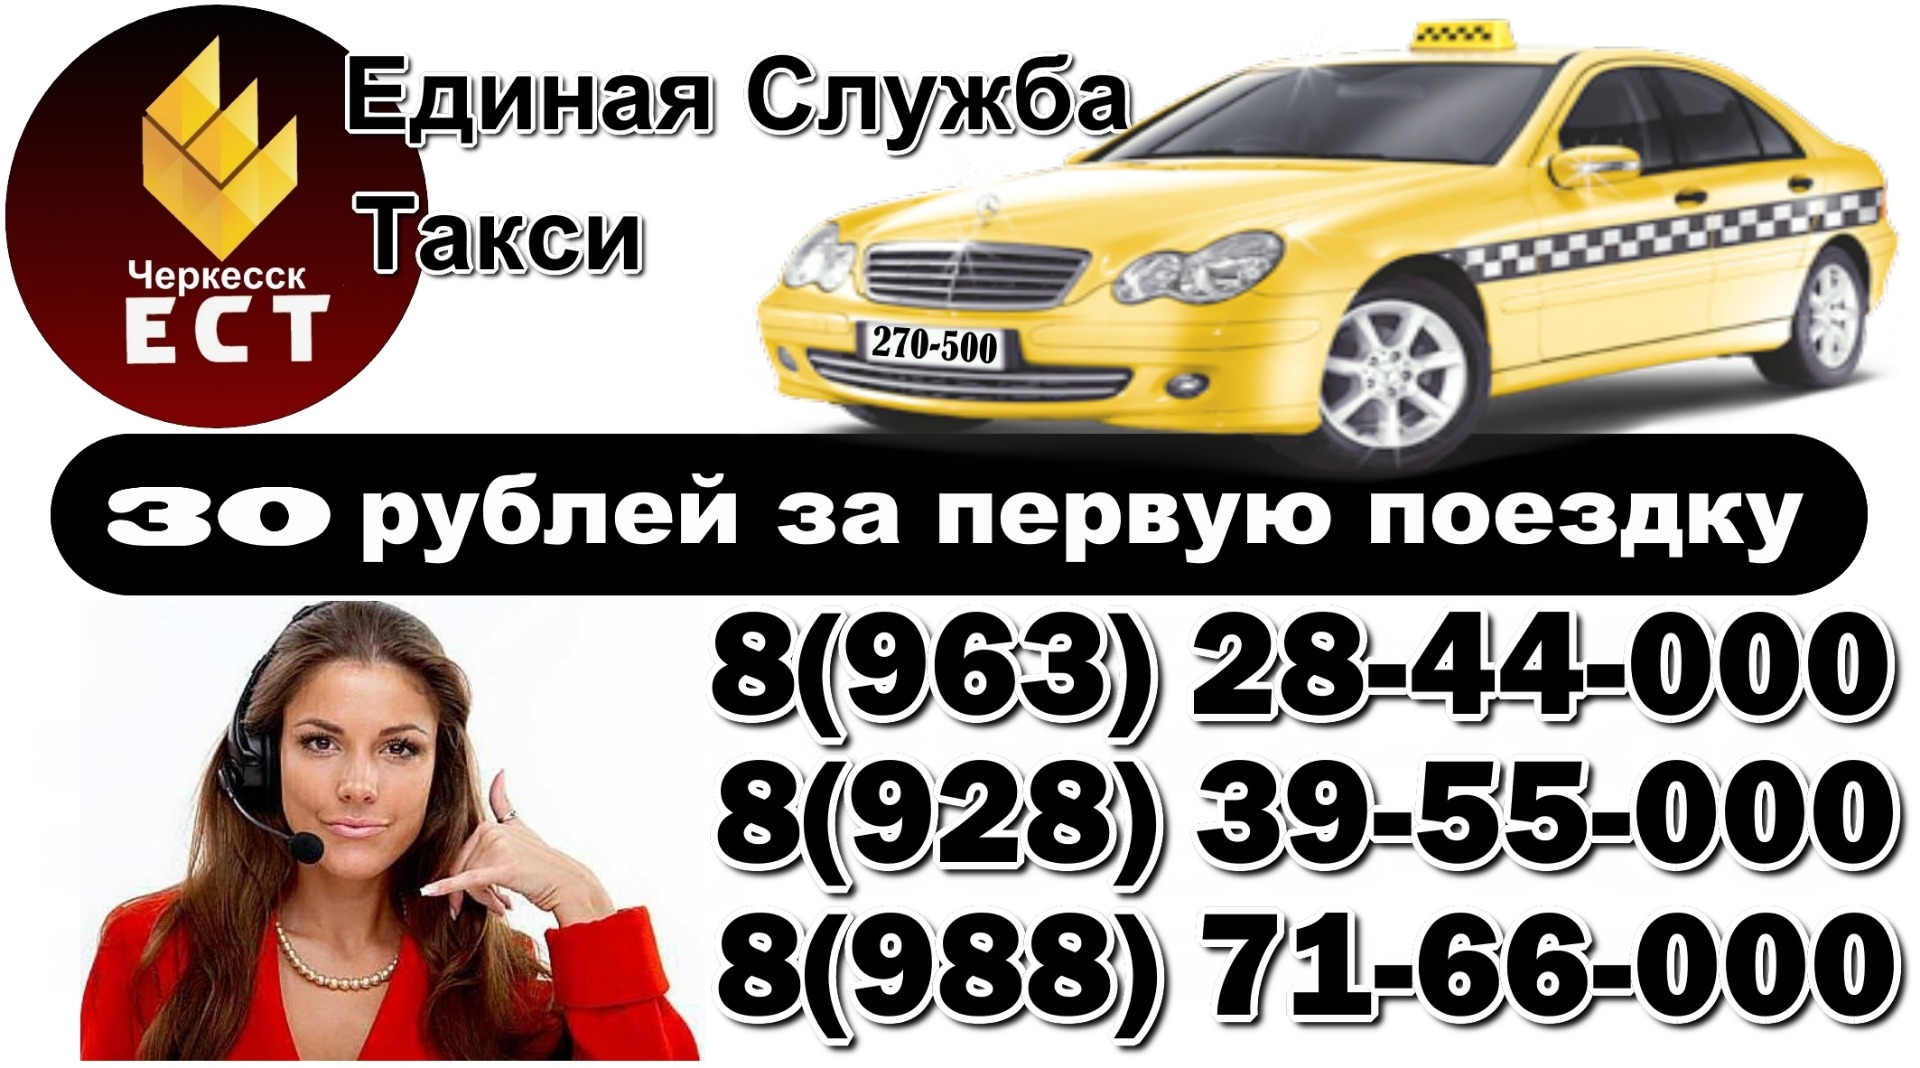 Заказ такси ставрополь телефон. Номер телефона такси. Номера службы такси. Такси Единая служба номер. Такси Черкесск.